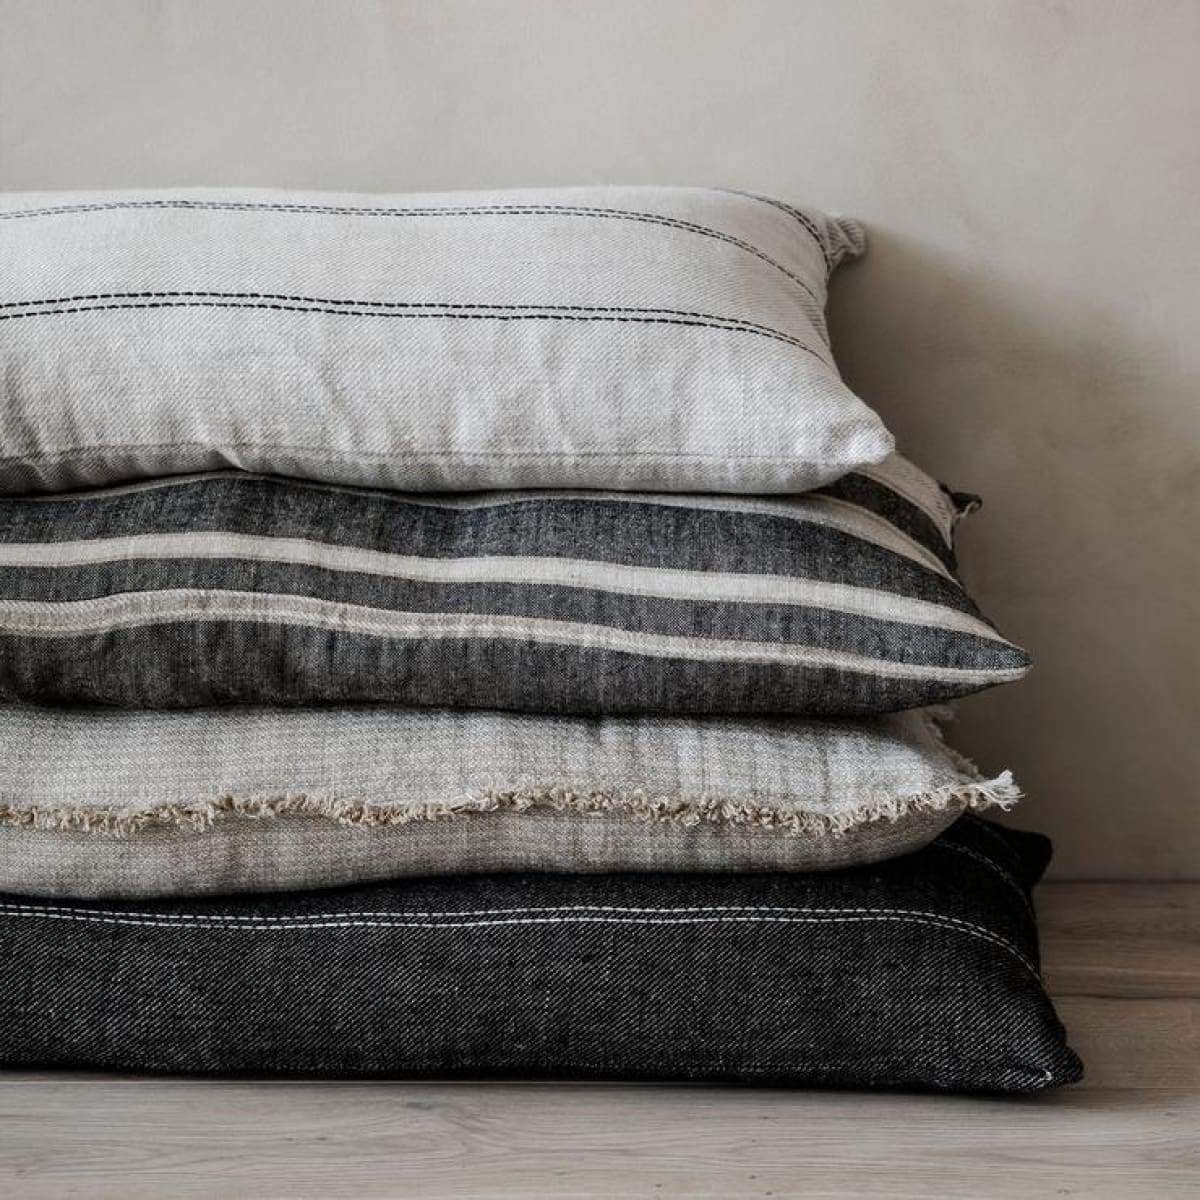 European Flax Linen Oversized Lumbar Pillow Cover